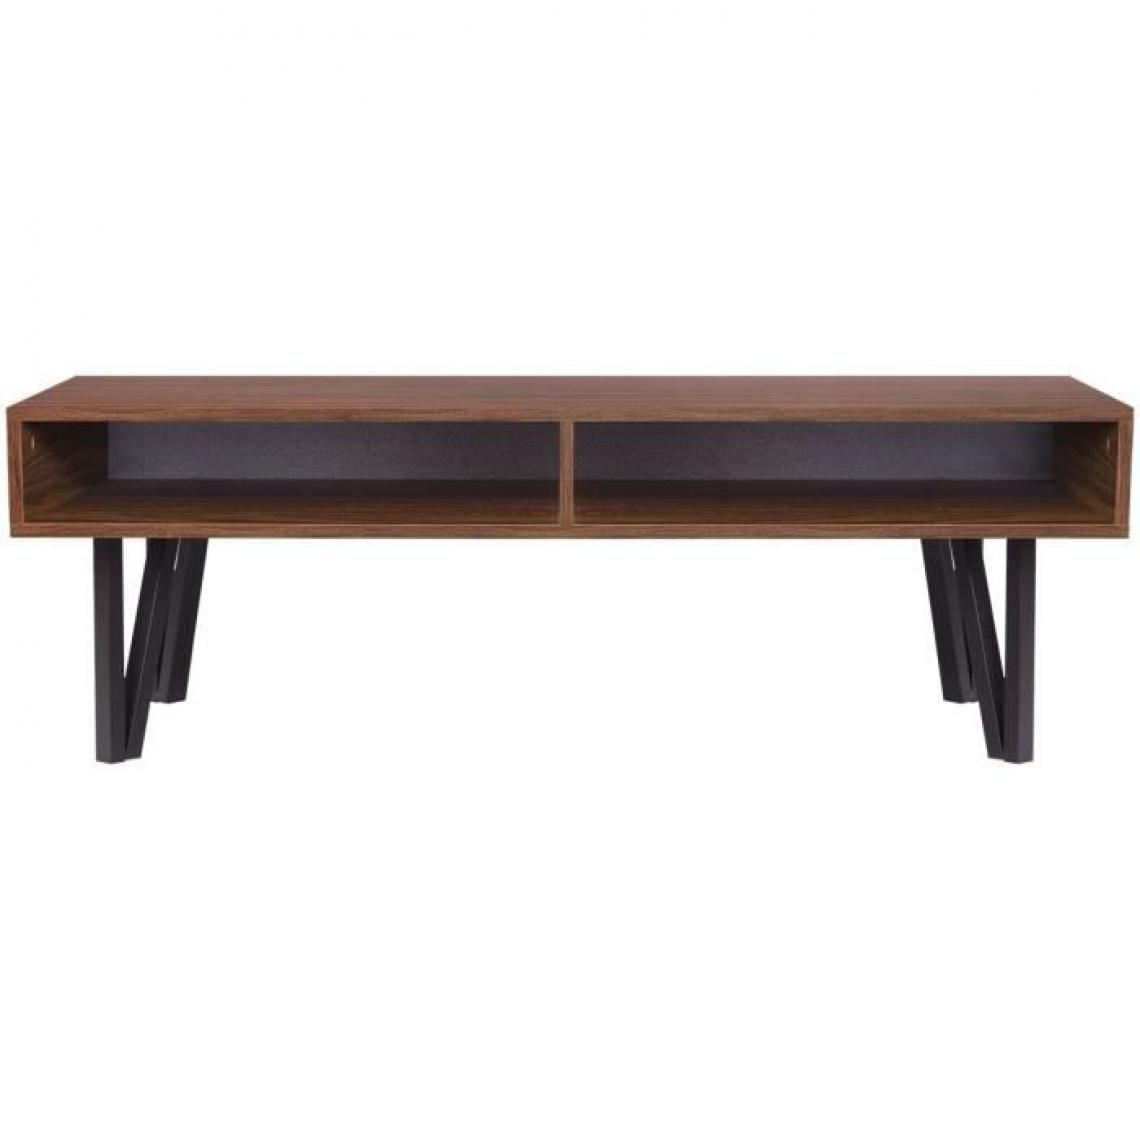 Cstore - Table basse avec 2 niches de rangement - Noyer et noir - L 120 x l 60 x H 40 cm - LOFTY - Tables basses